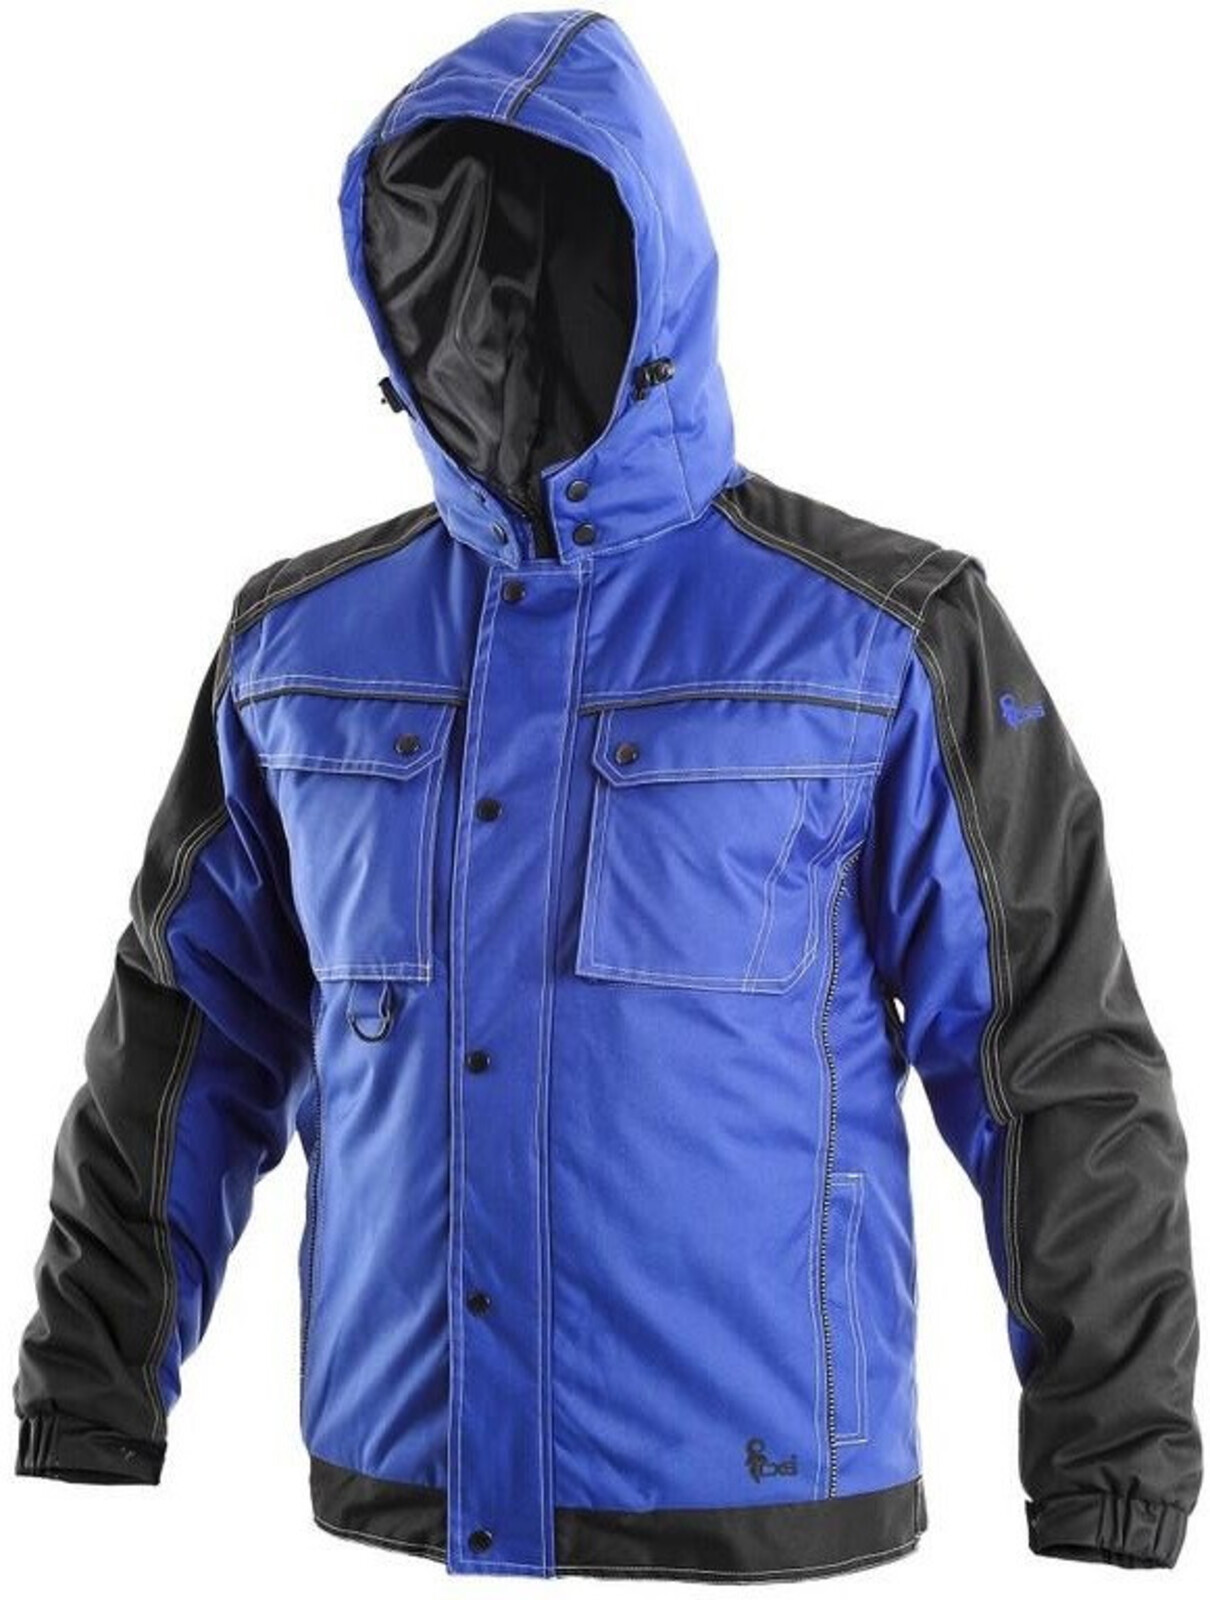 Pánska zimná bunda CXS Irvine 2v1 - veľkosť: 4XL, farba: modrá/čierna